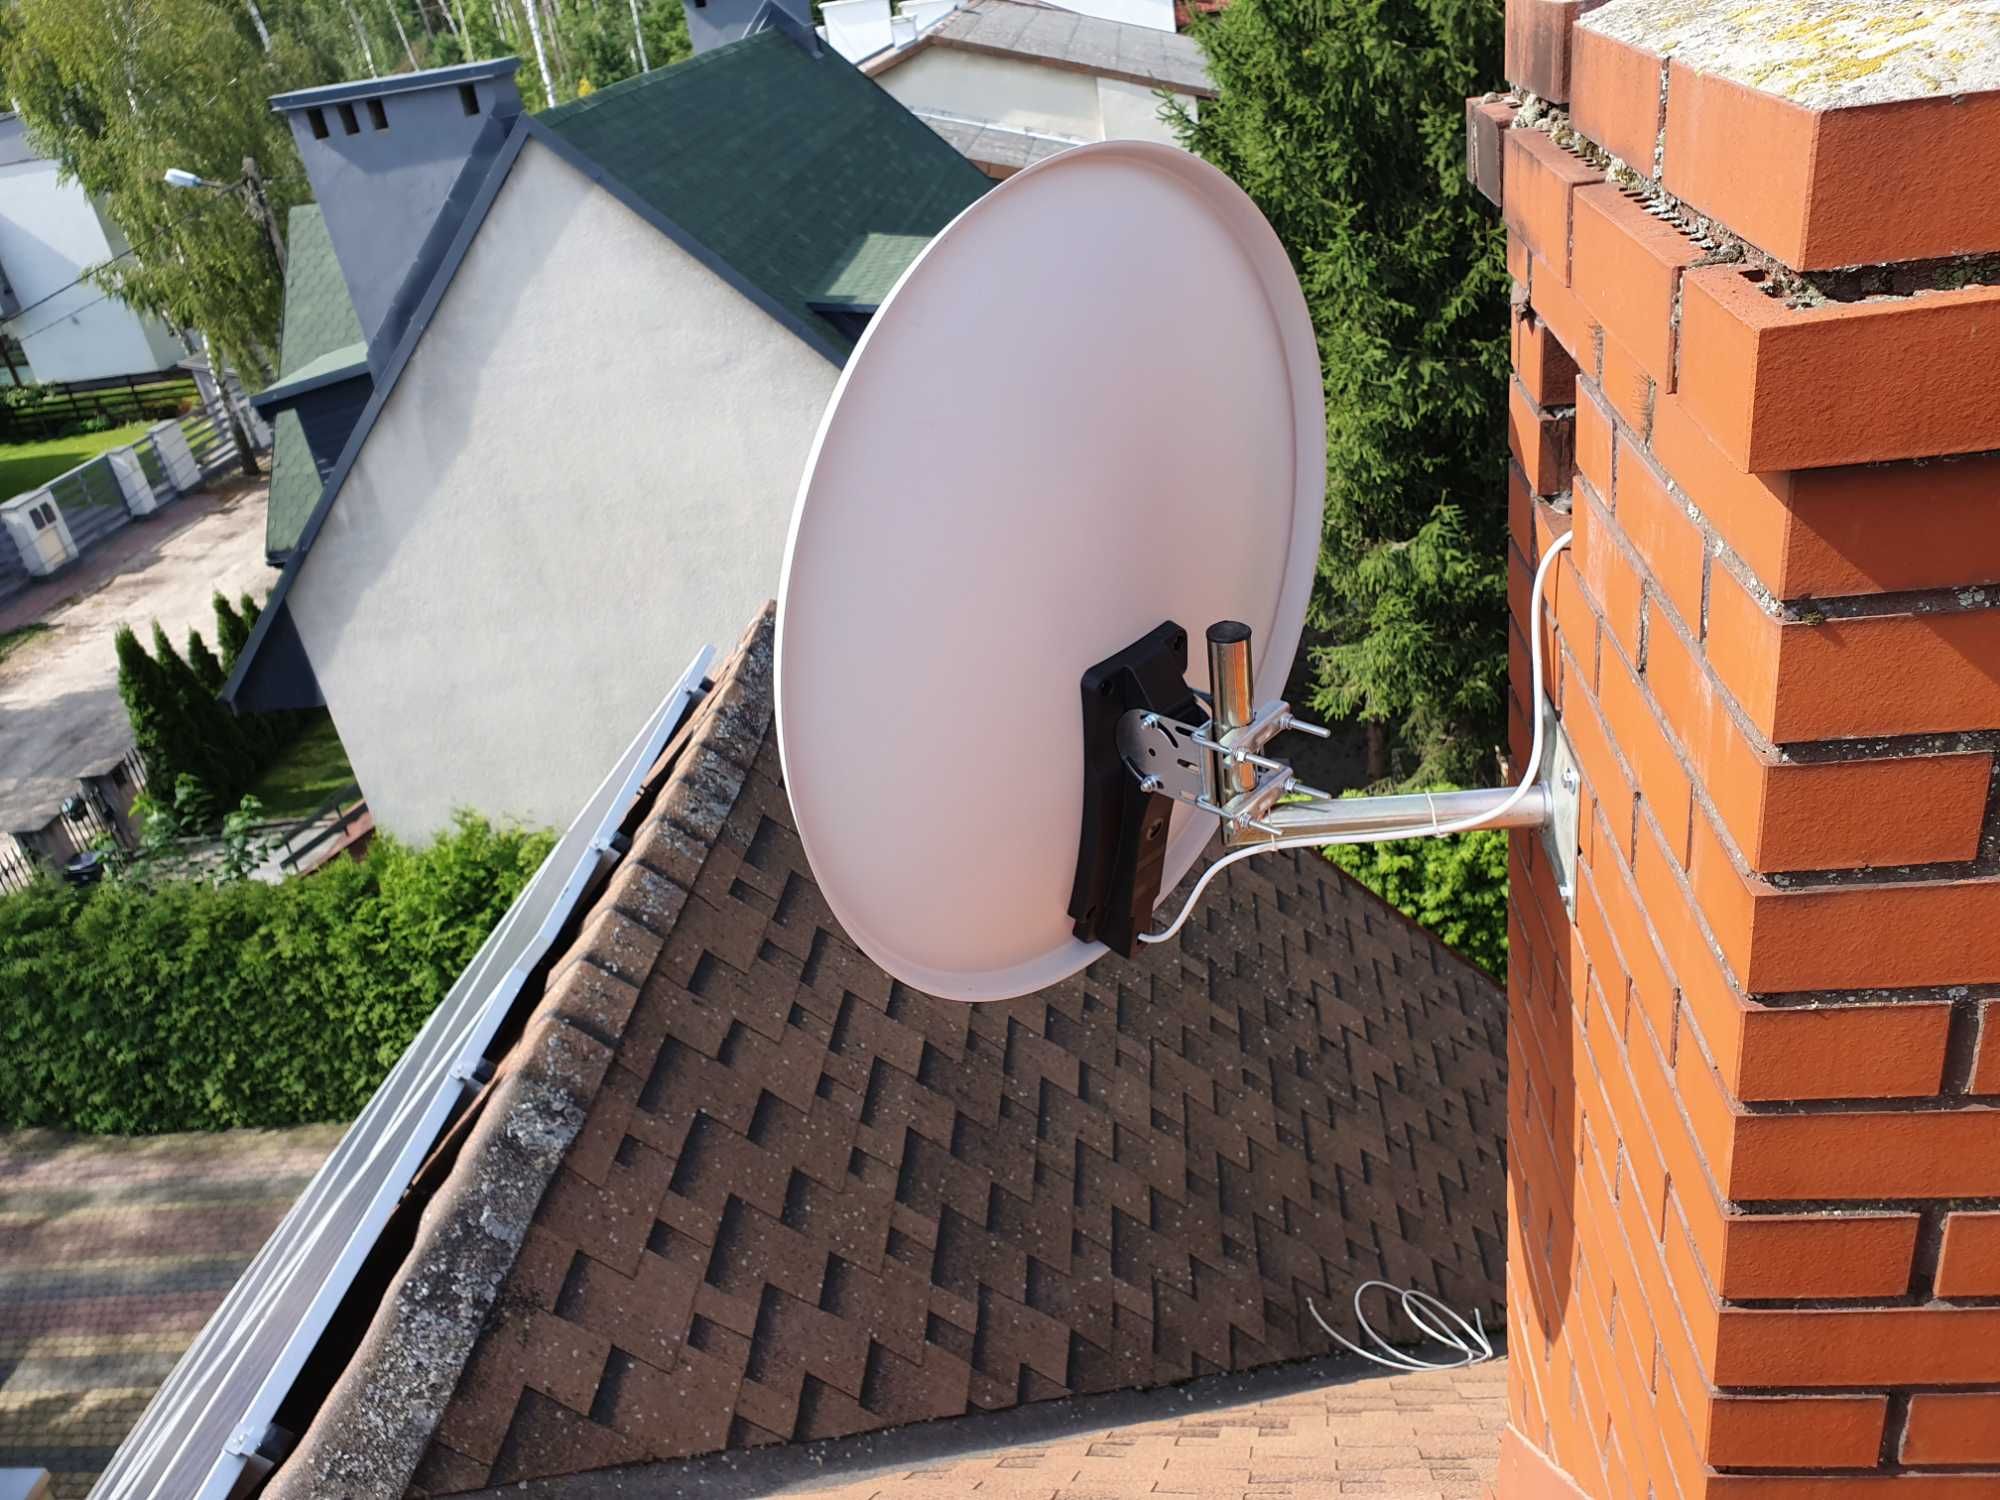 MONTAŻ, instalacja, ustawianie anten satelitarnych, DVB-T, LTE i GSM